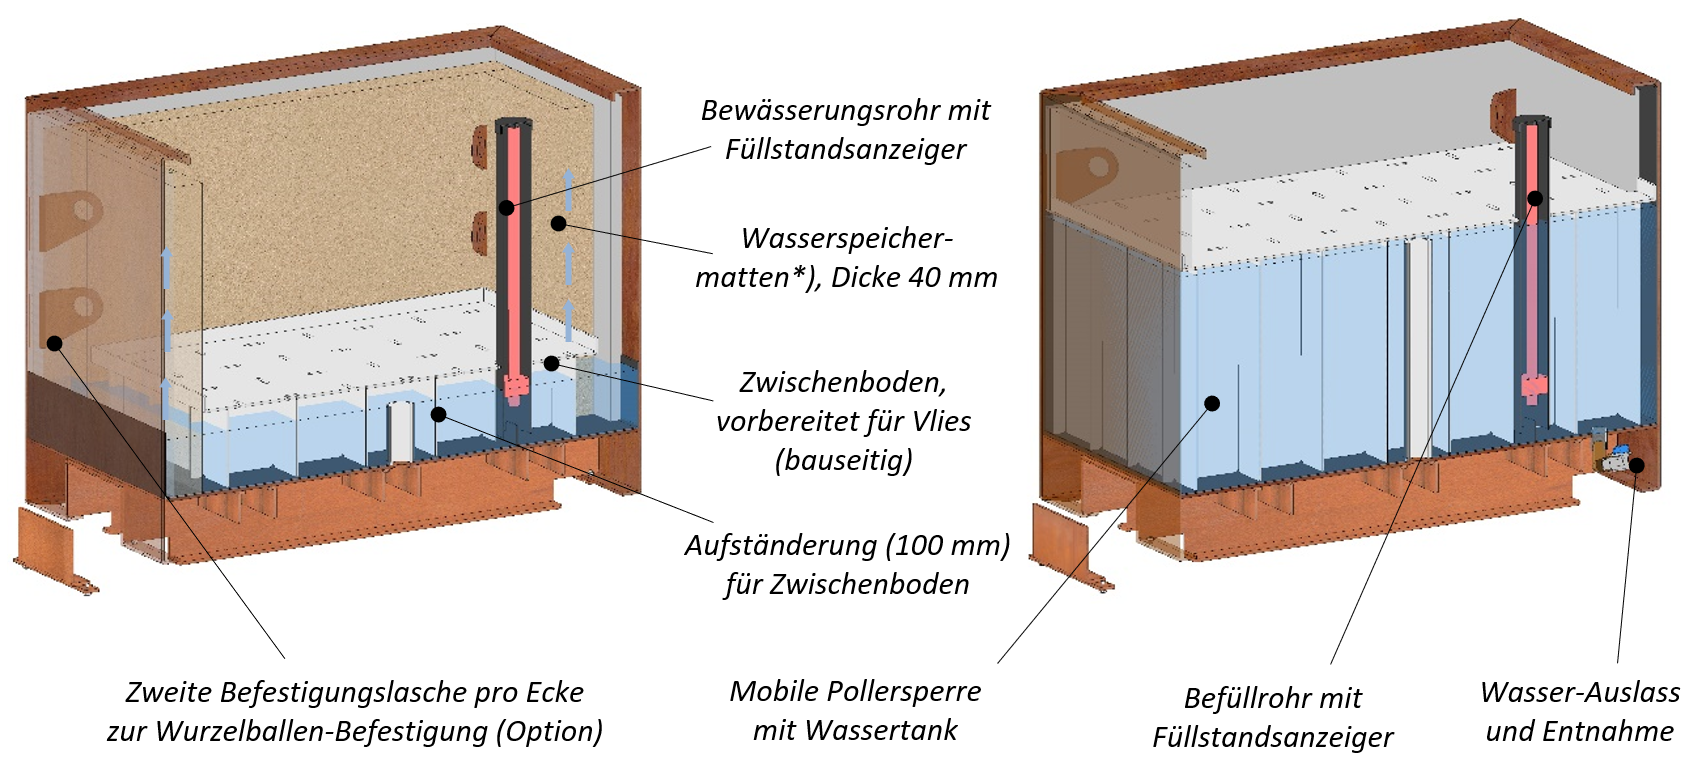 Boden Typ 3 mit Wasserbehälter und Typ 4 mit befüllbarem Wassertank als mobile Pollersperre